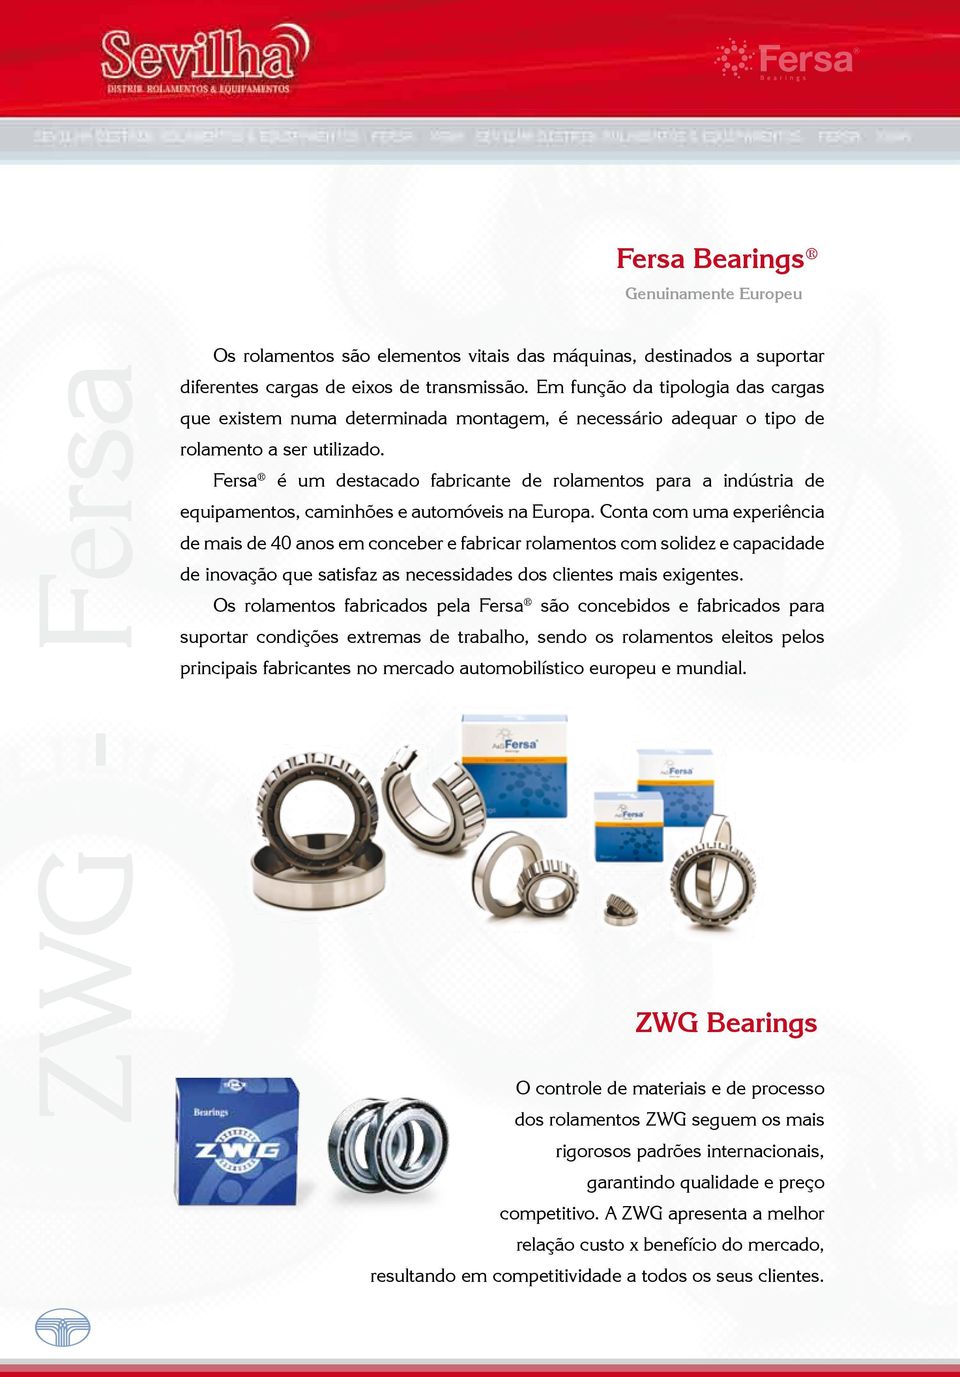 Fersa é um destacado fabricante de rolamentos para a indústria de equipamentos, caminhões e automóveis na Europa.